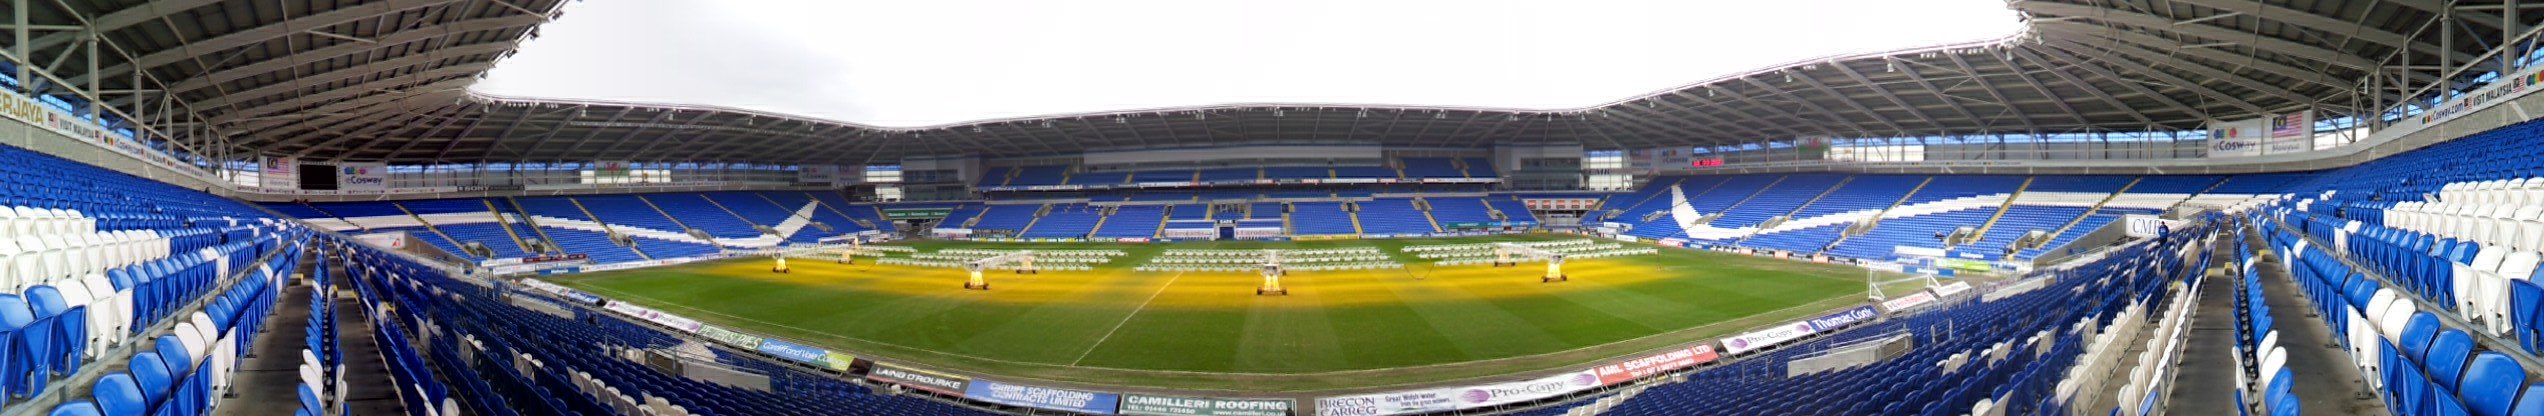 Panoramic_of_the_Cardiff_City_Stadium.jpg